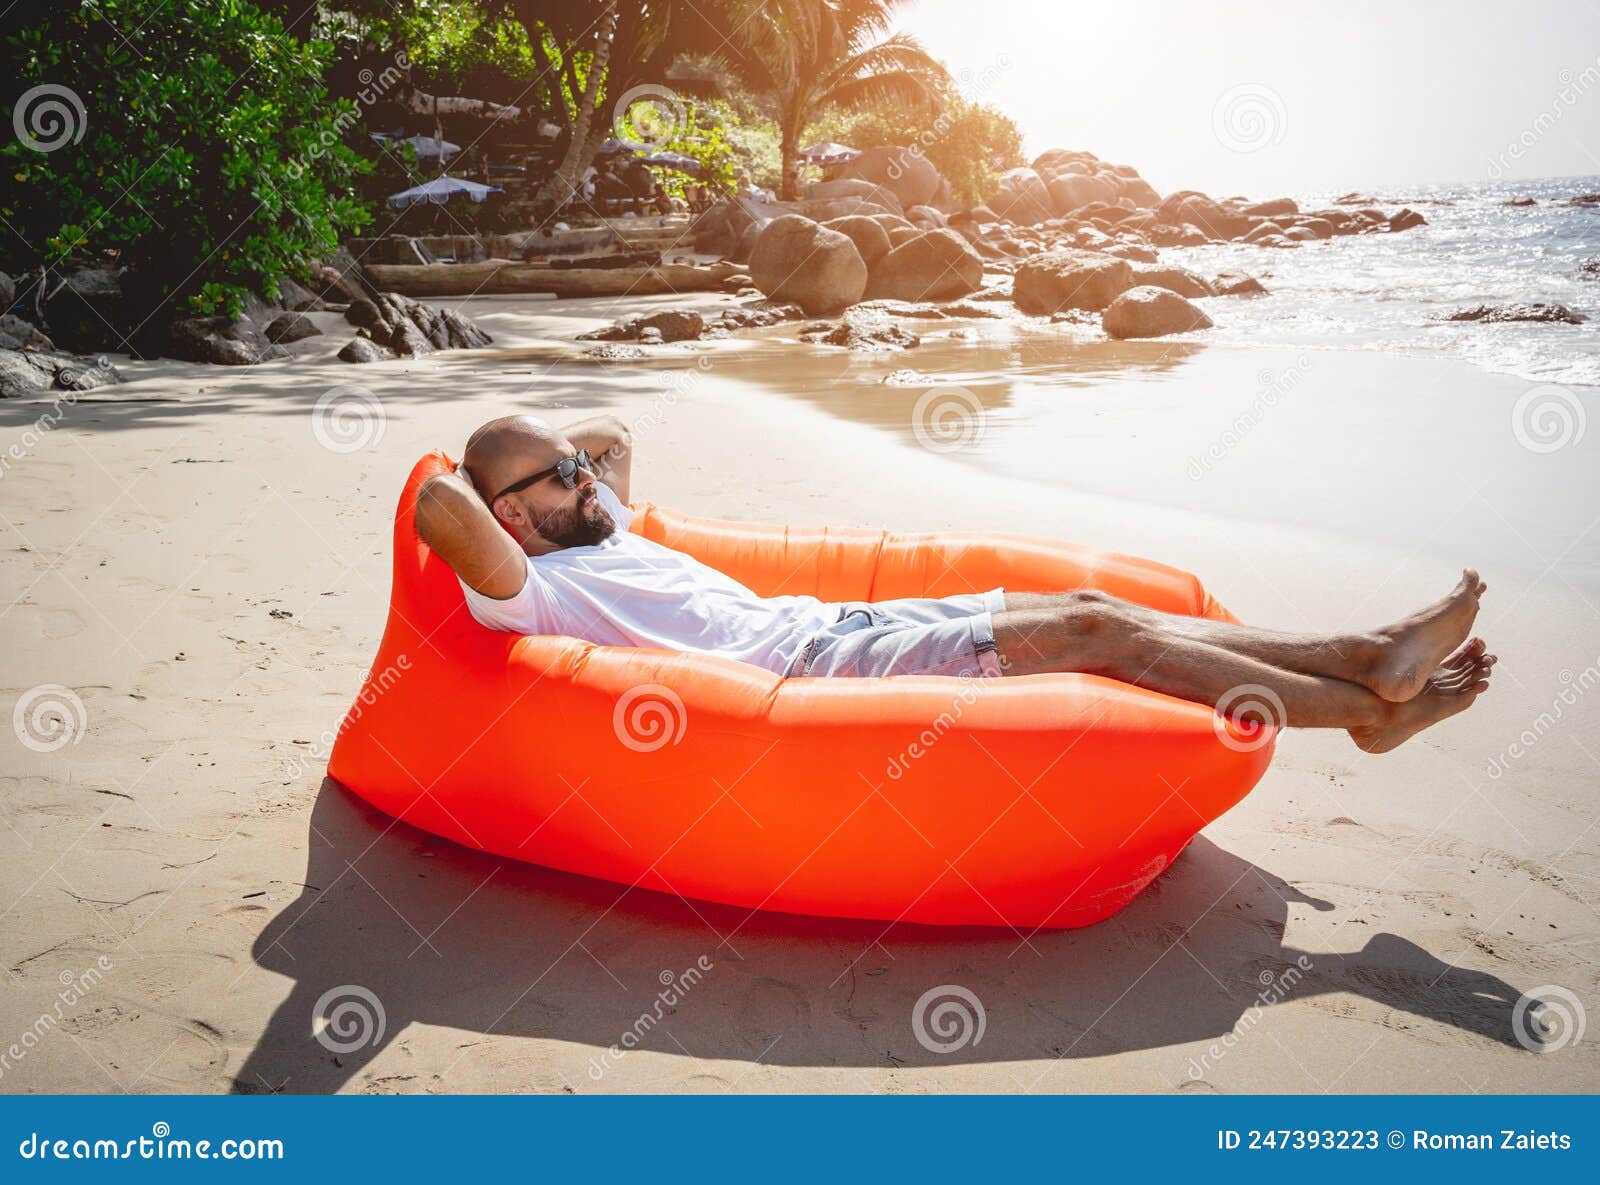 Joven En La Playa Sentado Un Sofá Inflable Imagen de archivo - Imagen de adulto, 247393223